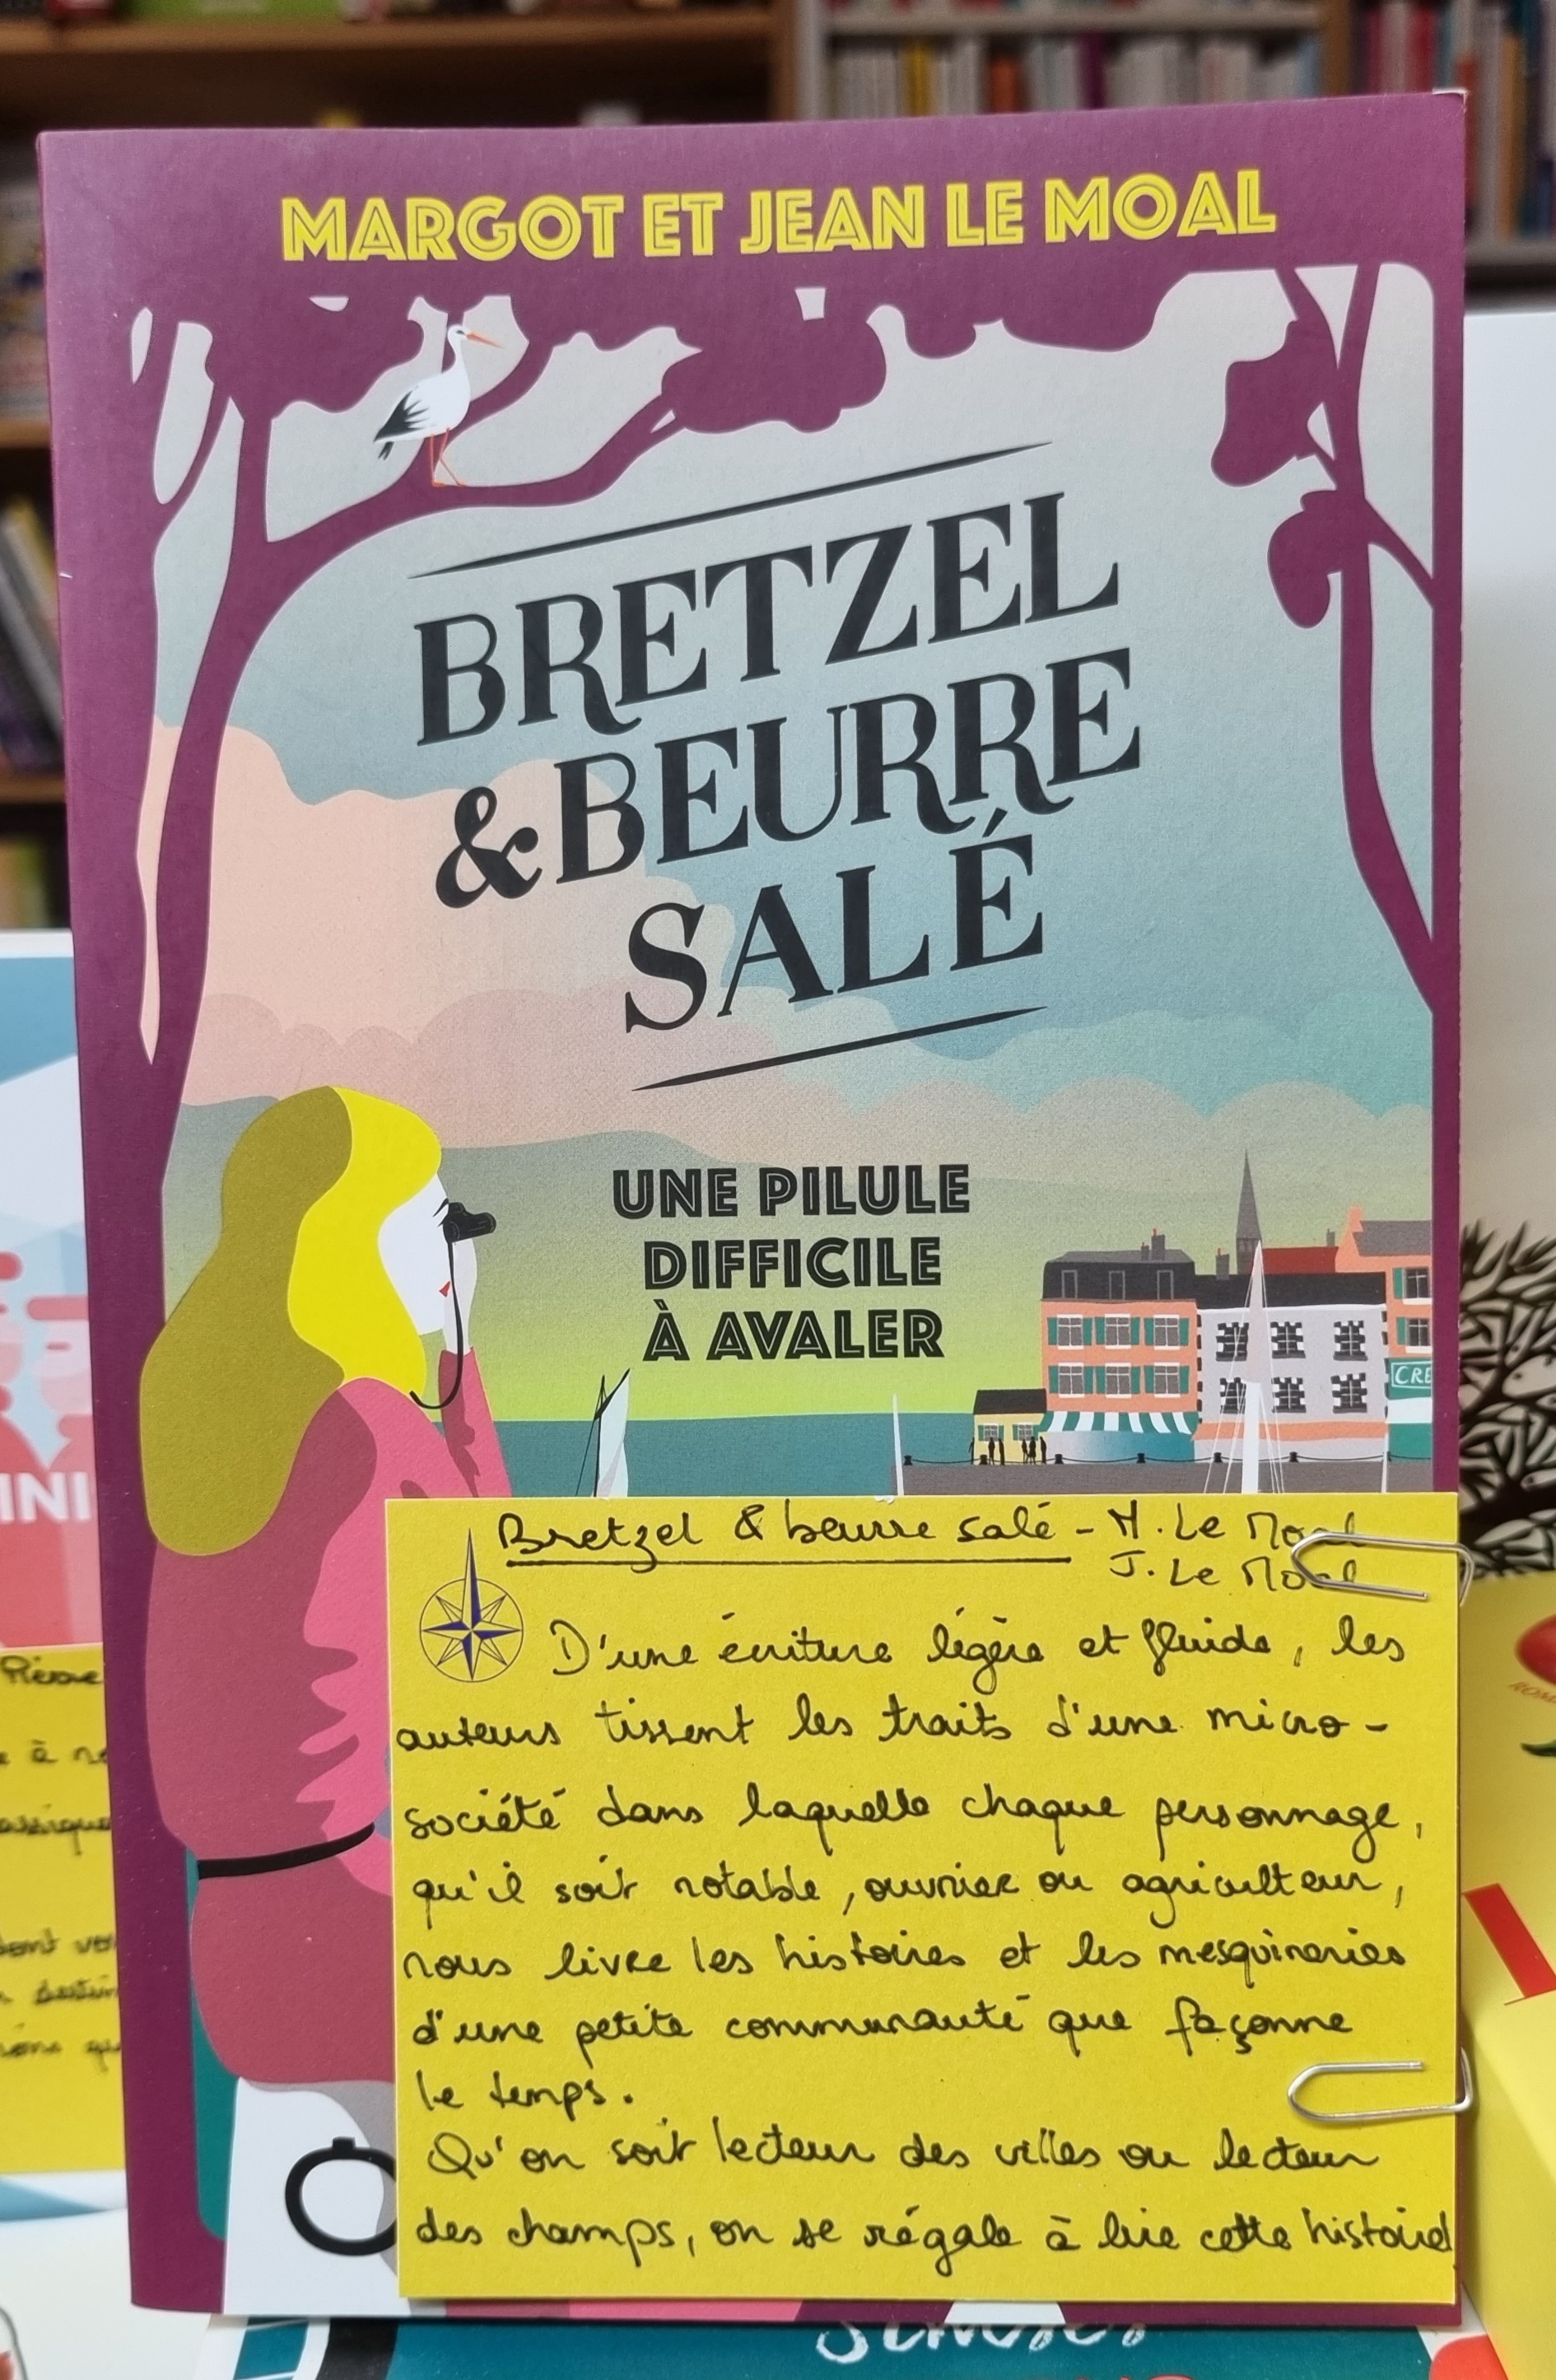 Bretzel & beurre salé » de Margot et Jean Le Moal… – Charthémiss